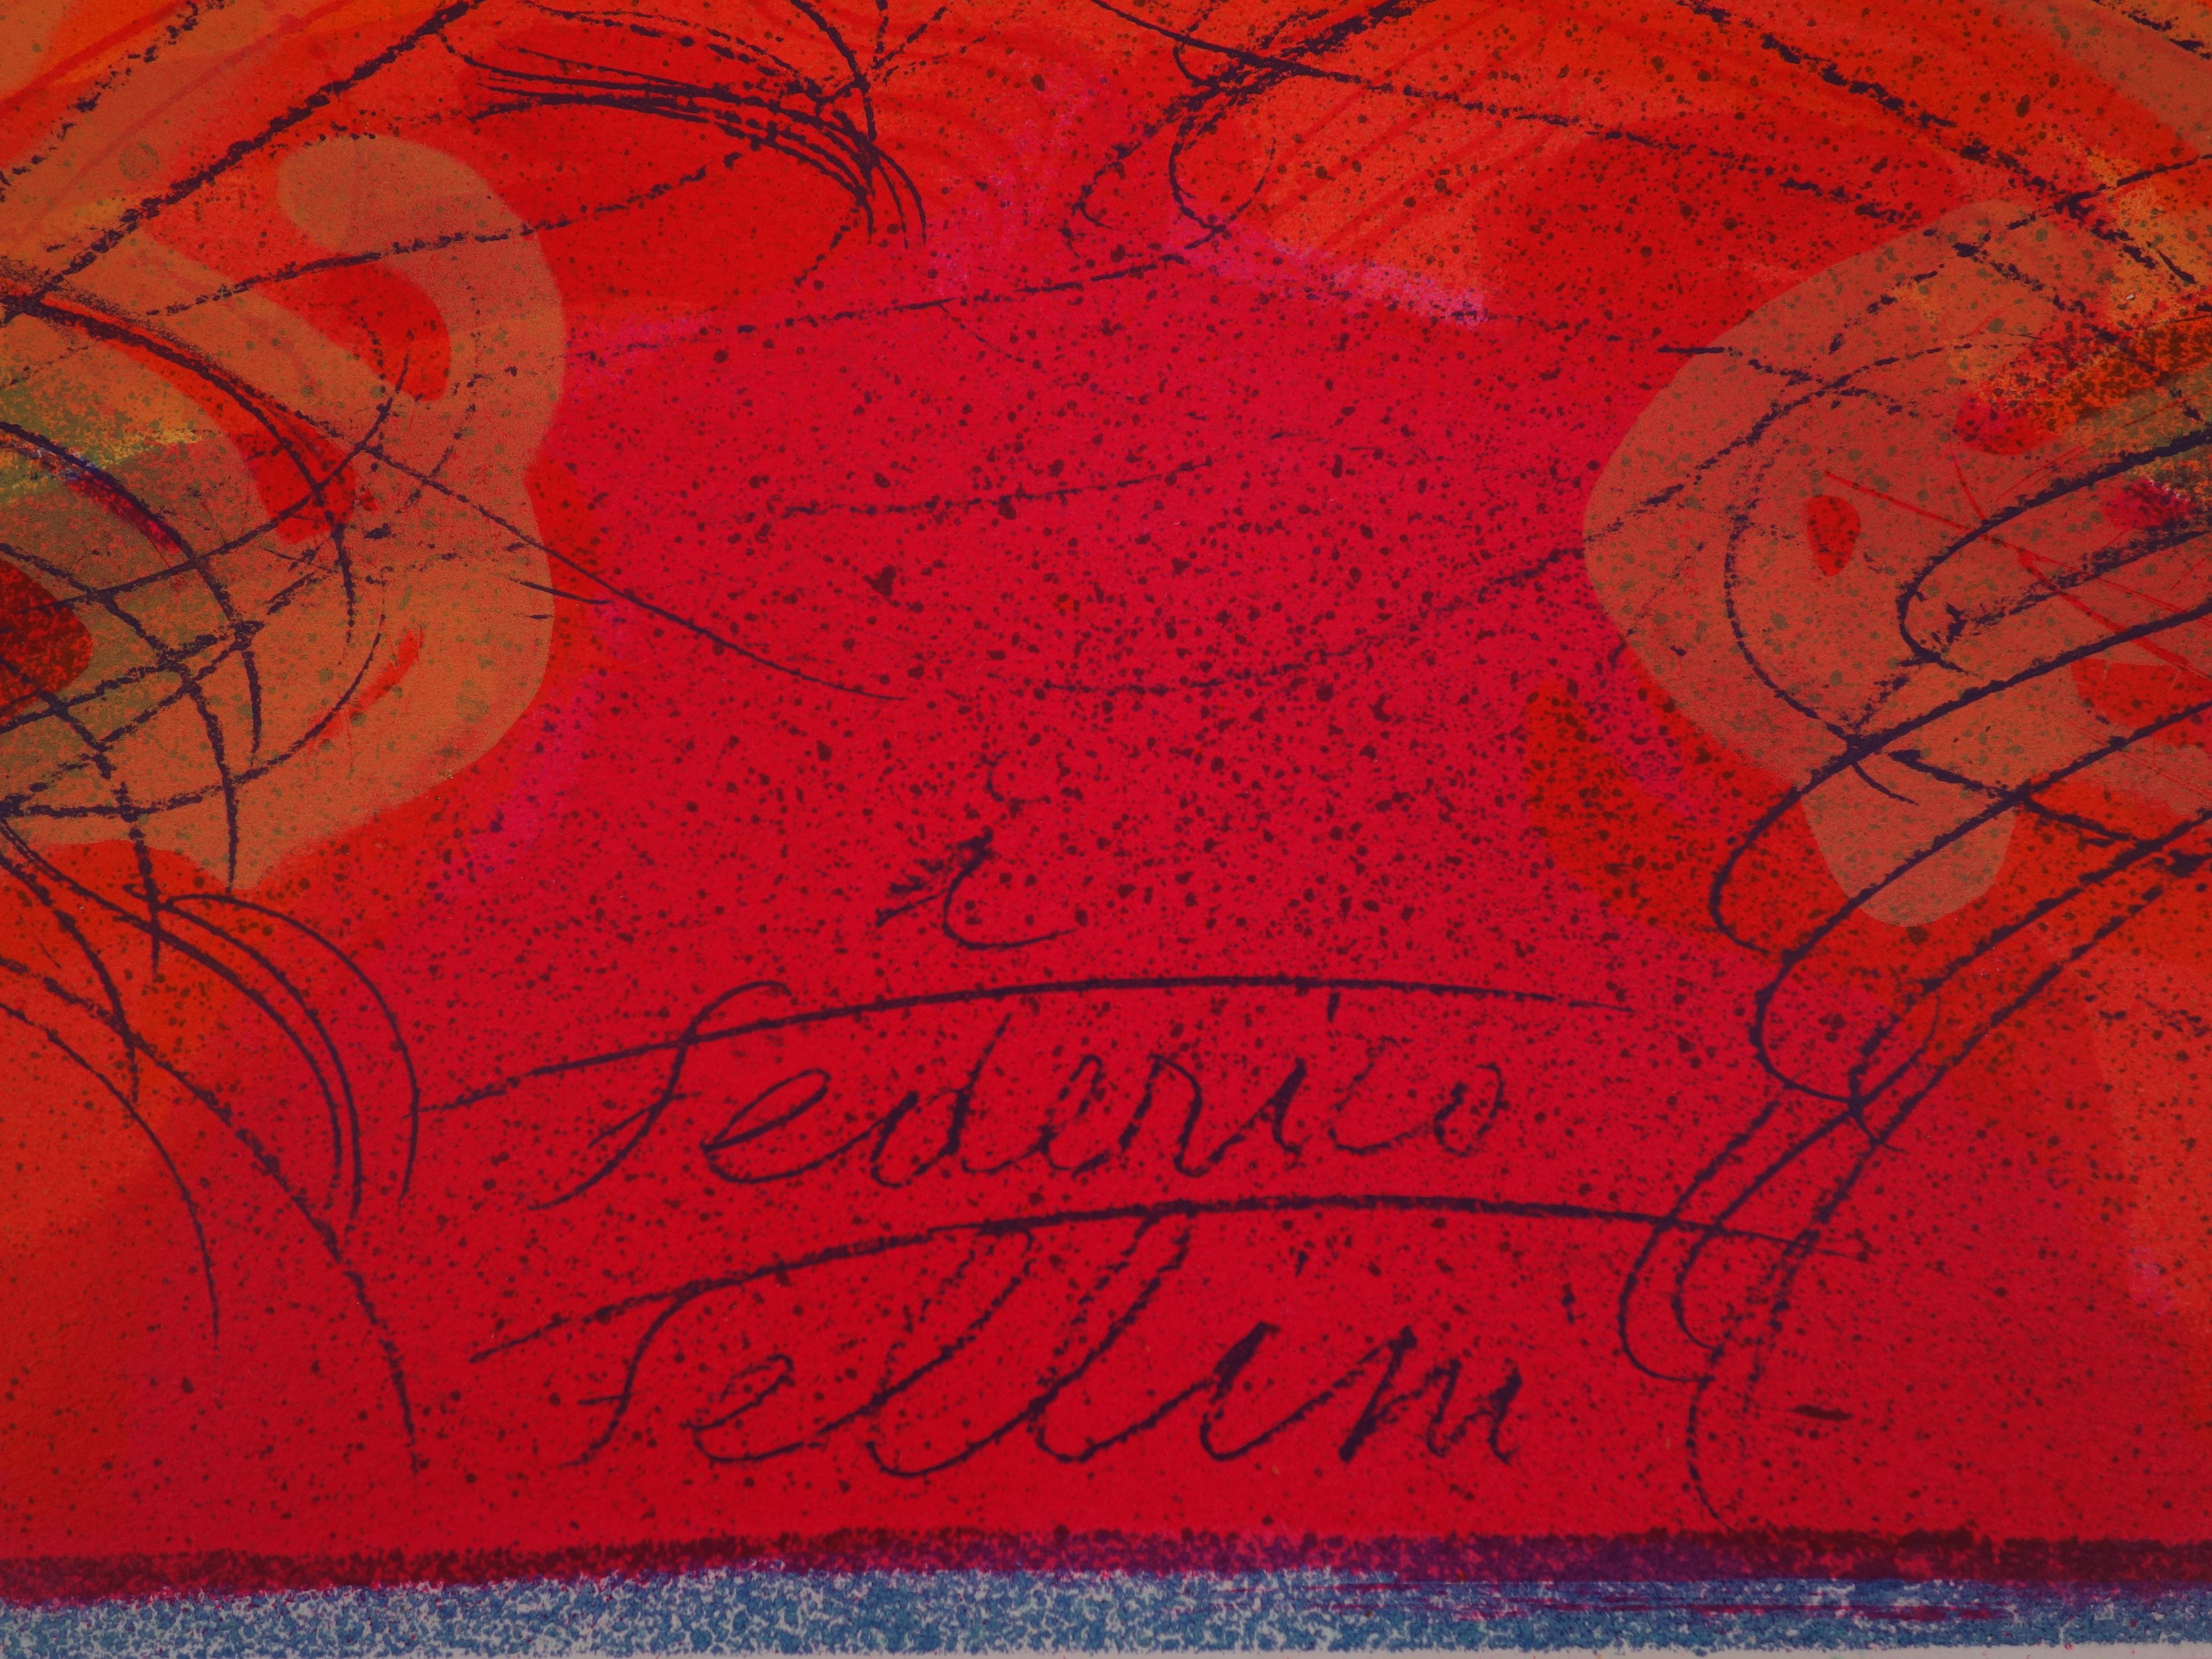 Jean MESSAGIER
Monument für Federico Fellini

Original-Lithographie 
Handsigniert
Nummeriert / 100 Ex
Auf Pergament 70 x 50 cm (ca. 28 x 20 Zoll)

Ausgezeichneter Zustand